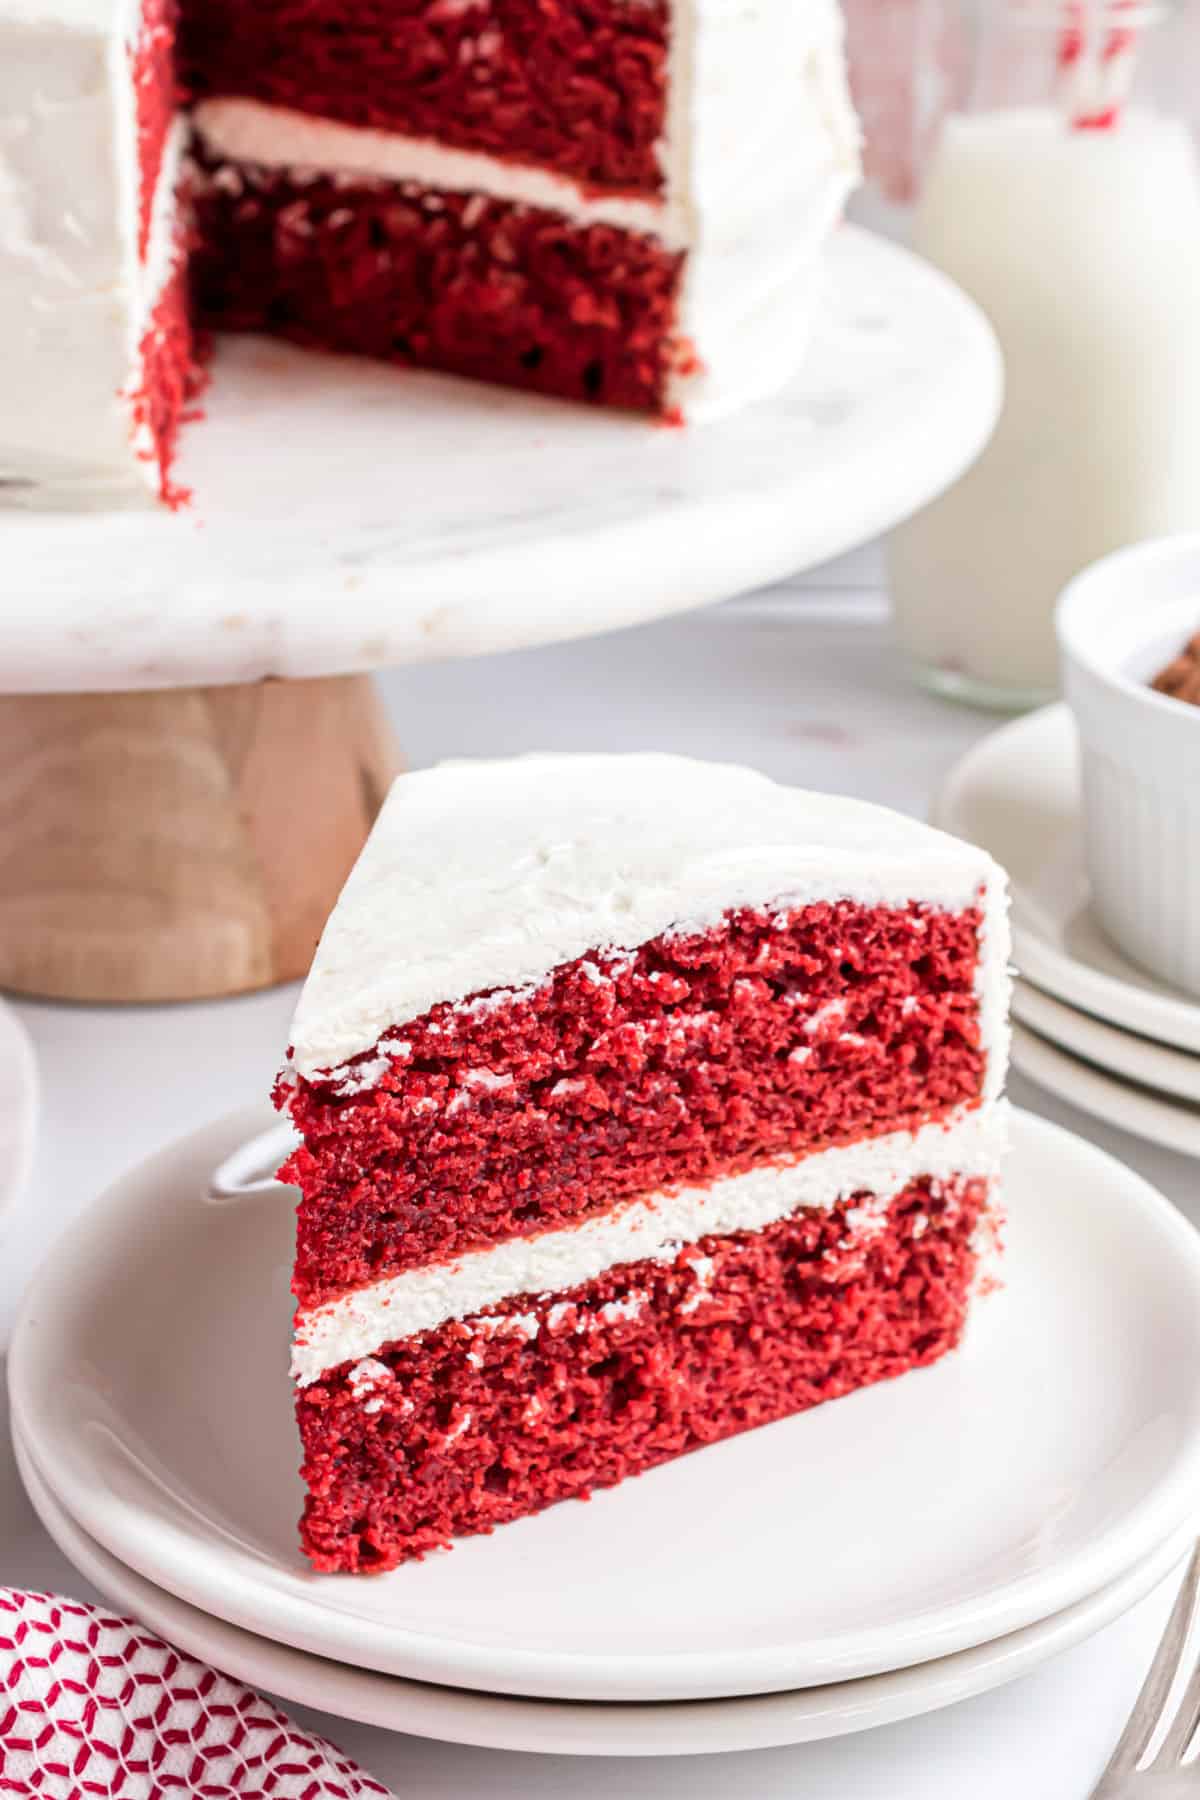 Slice of red velvet cake on a white plate.